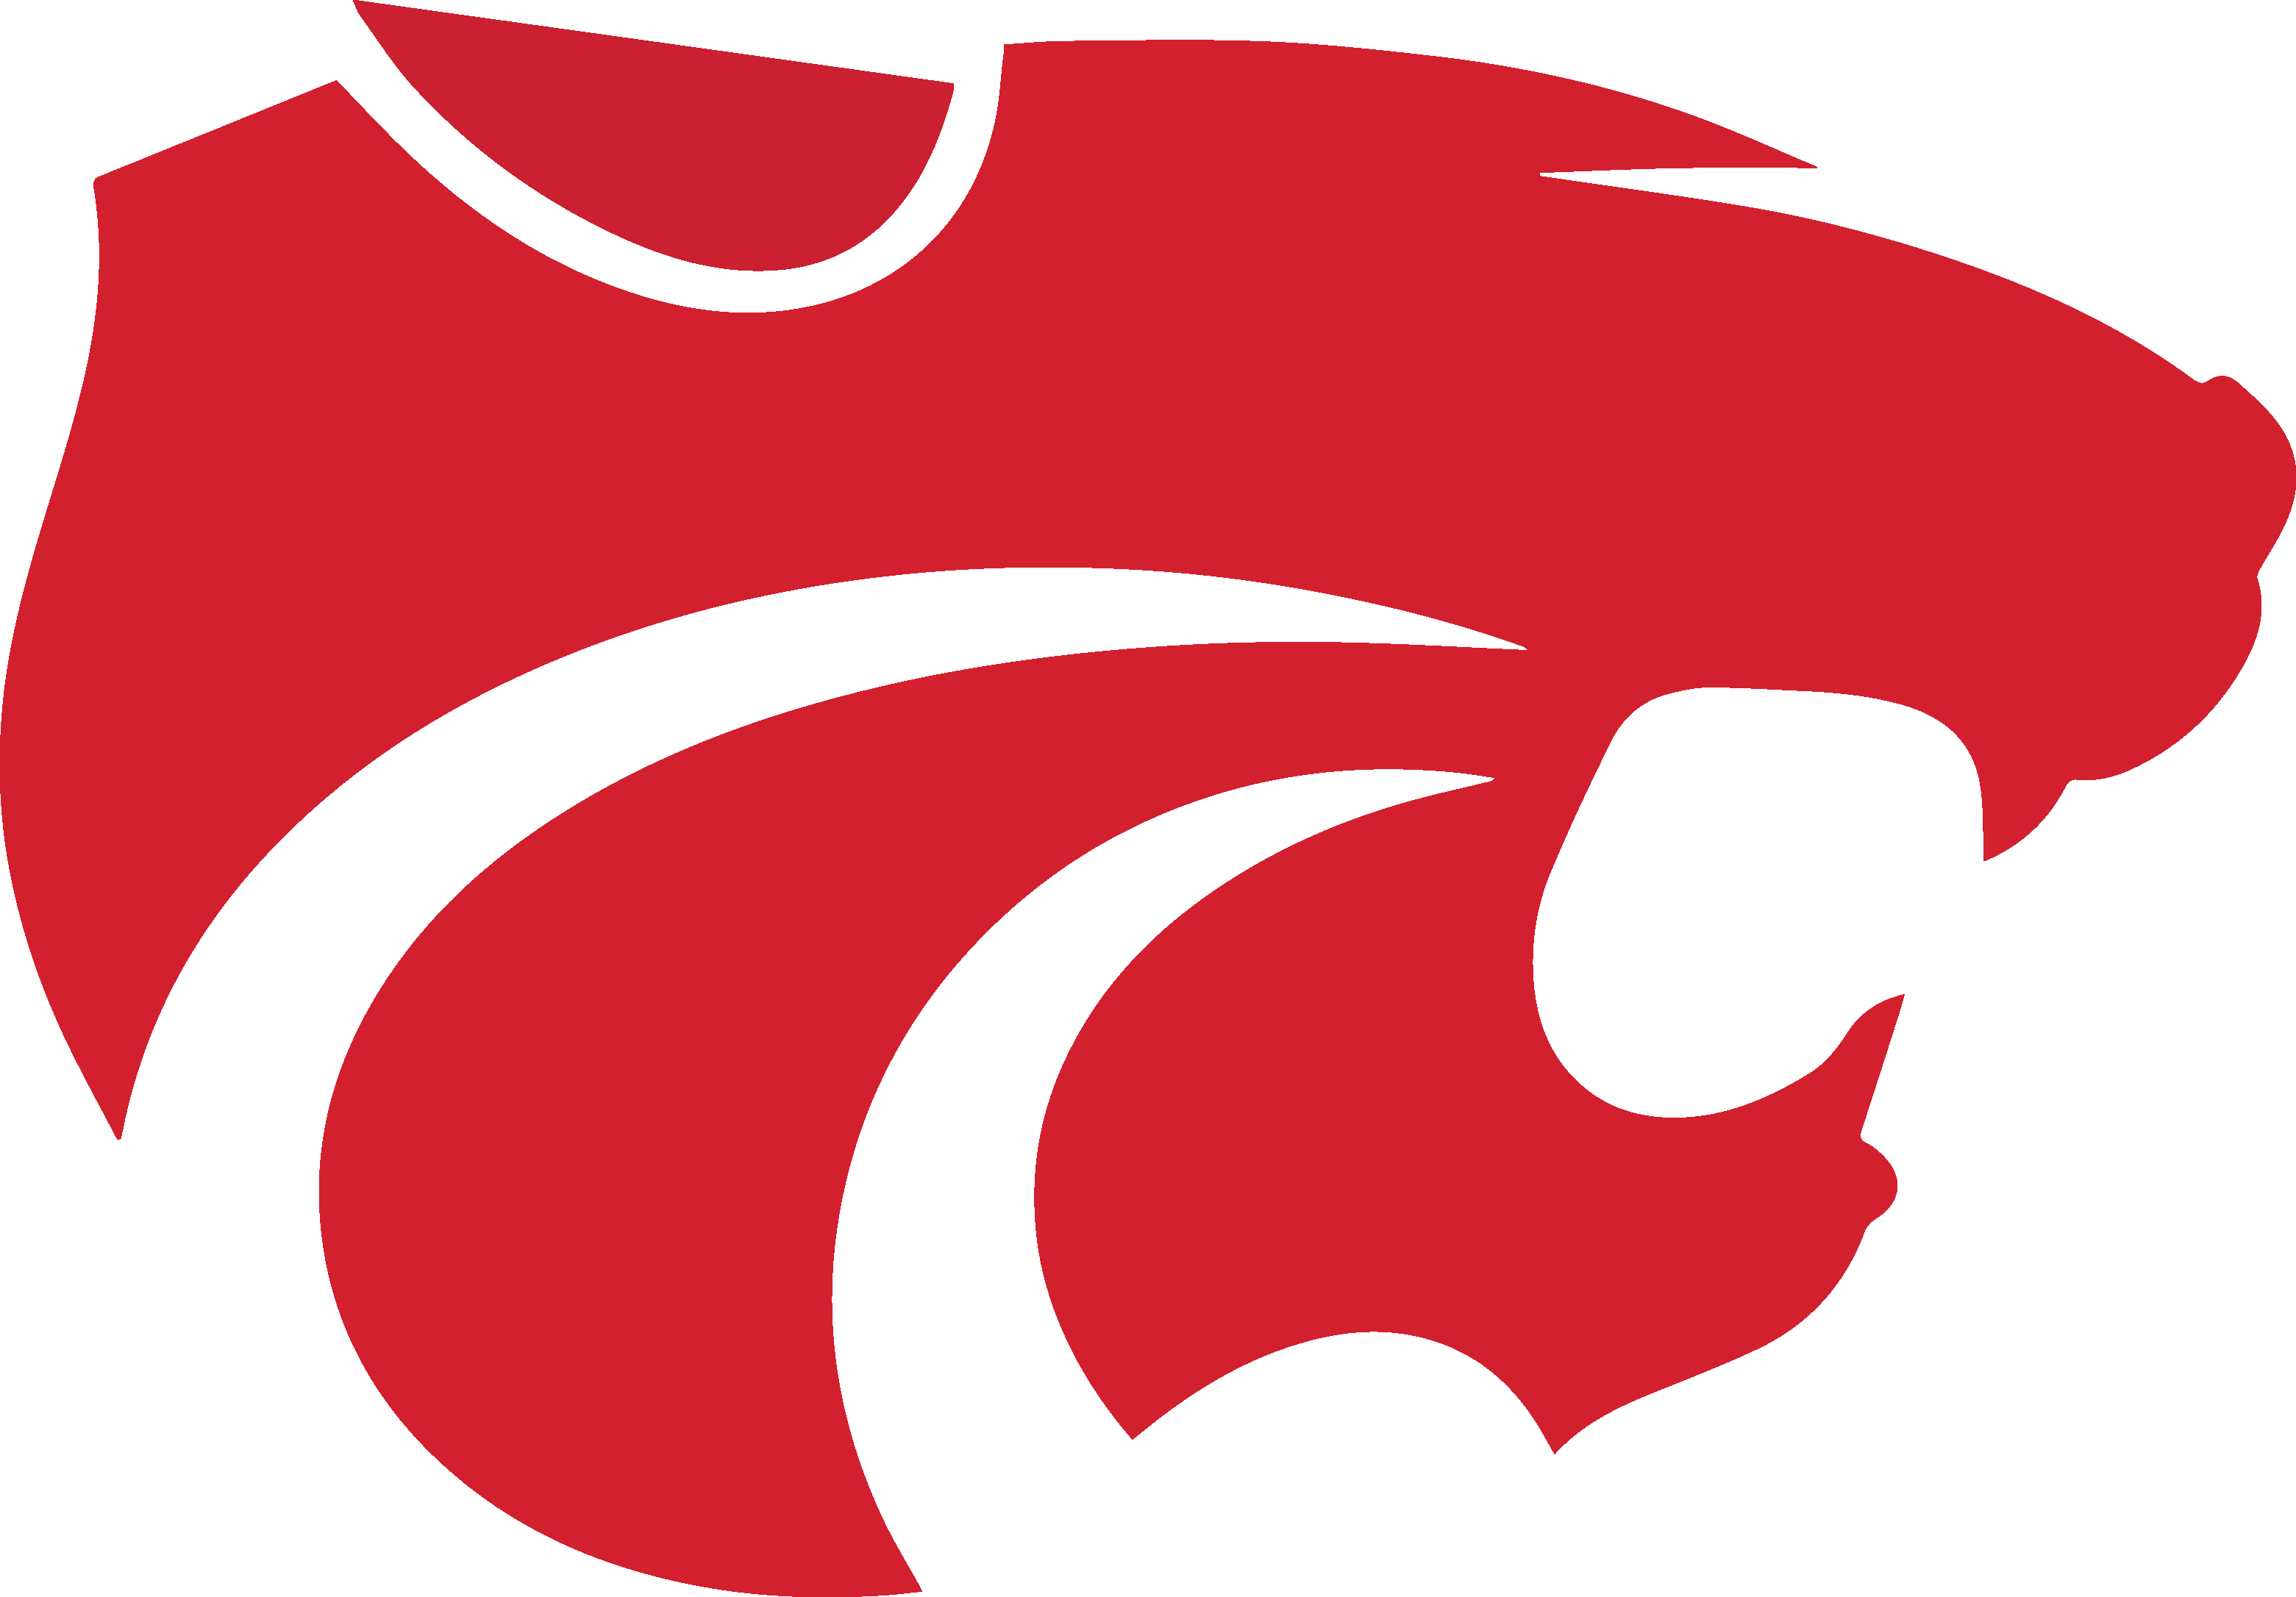 Wildcat company logo